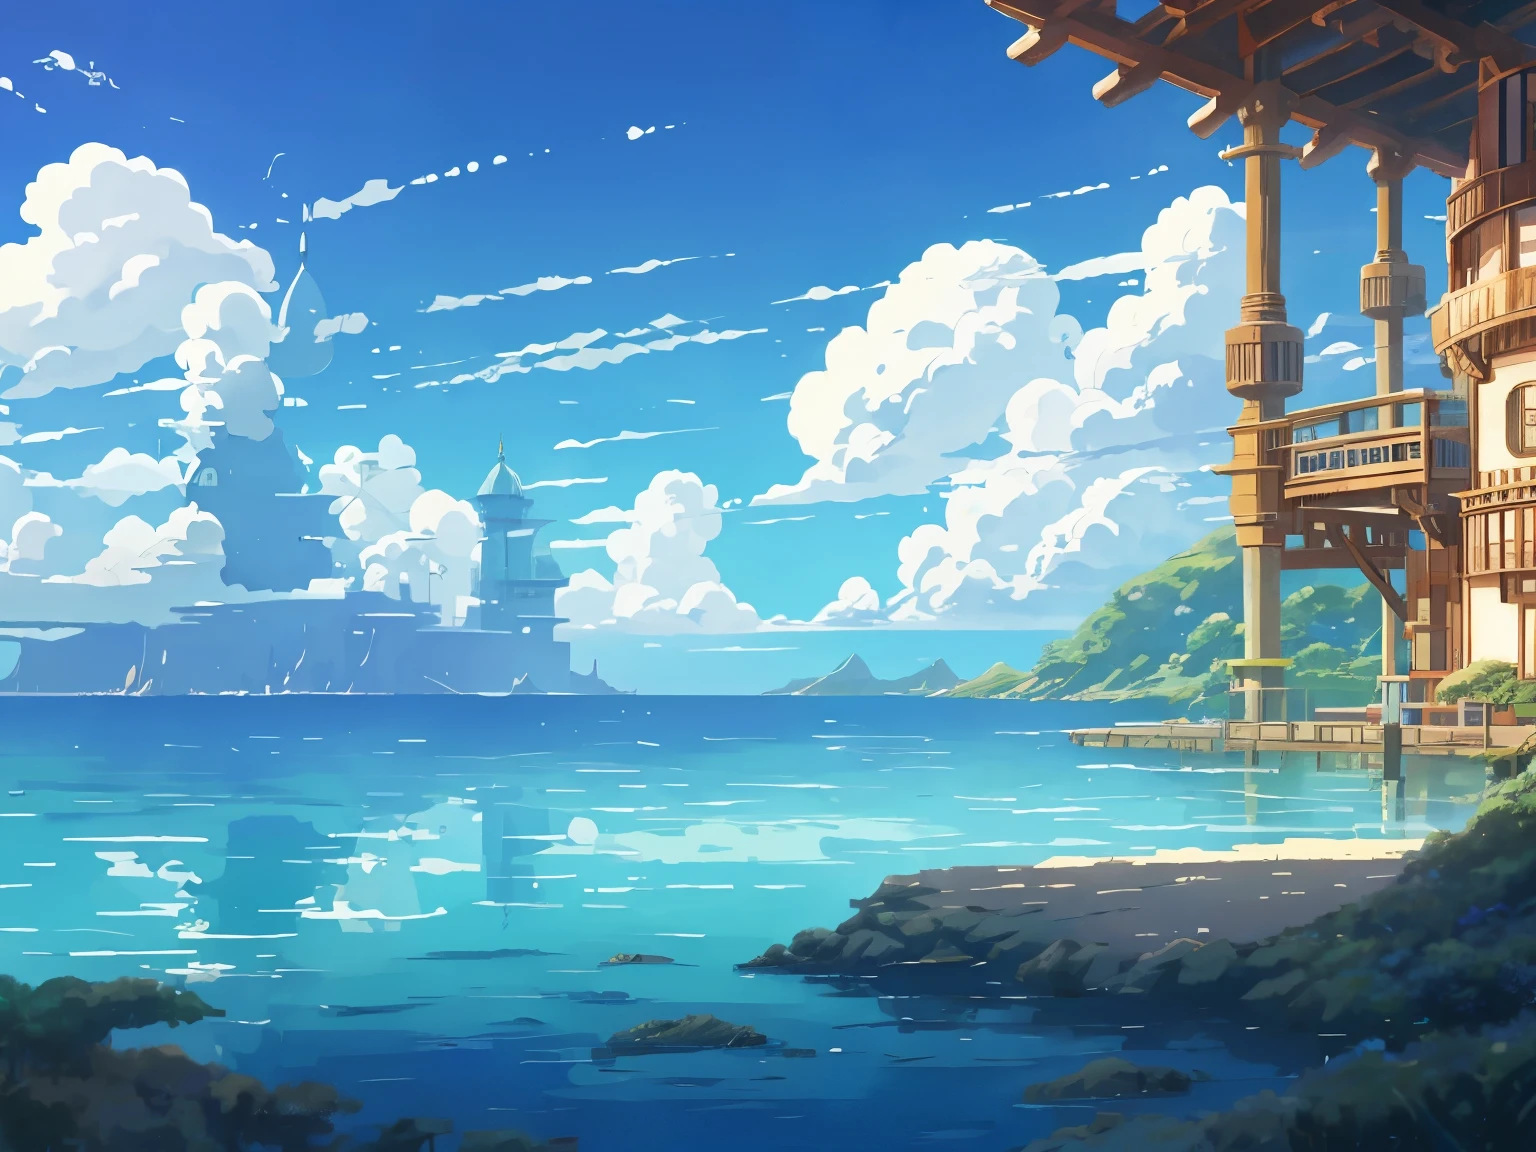 Captura de tela do DVD do filme do Studio Ghibli, lindo interior de laboratório à beira mar, Nuvens no céu azul, desenhado por Hayao Miyazaki, retro anime